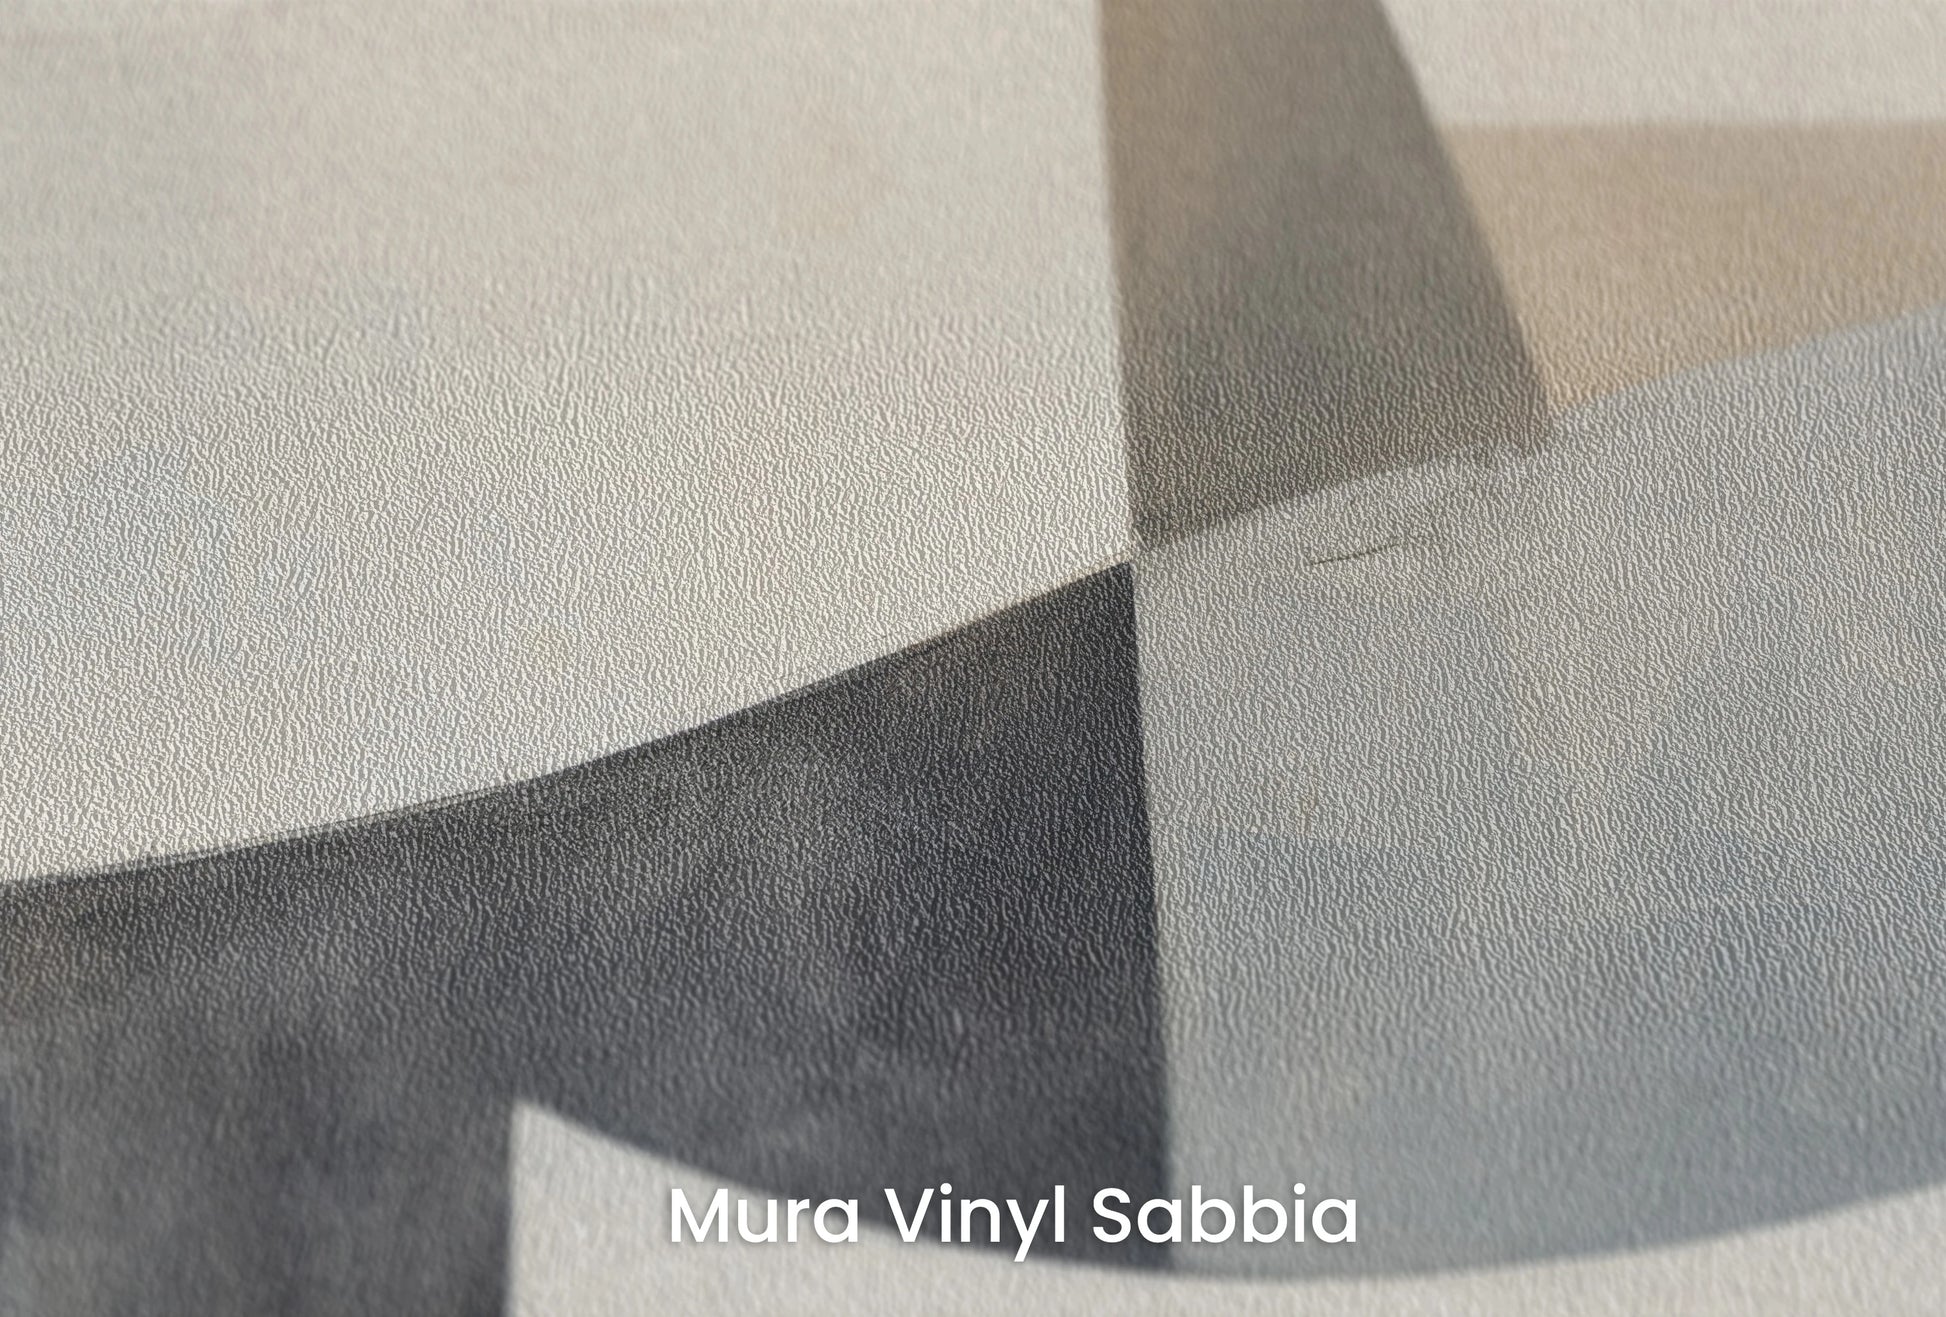 Zbliżenie na artystyczną fototapetę o nazwie Curved Tranquility na podłożu Mura Vinyl Sabbia struktura grubego ziarna piasku.